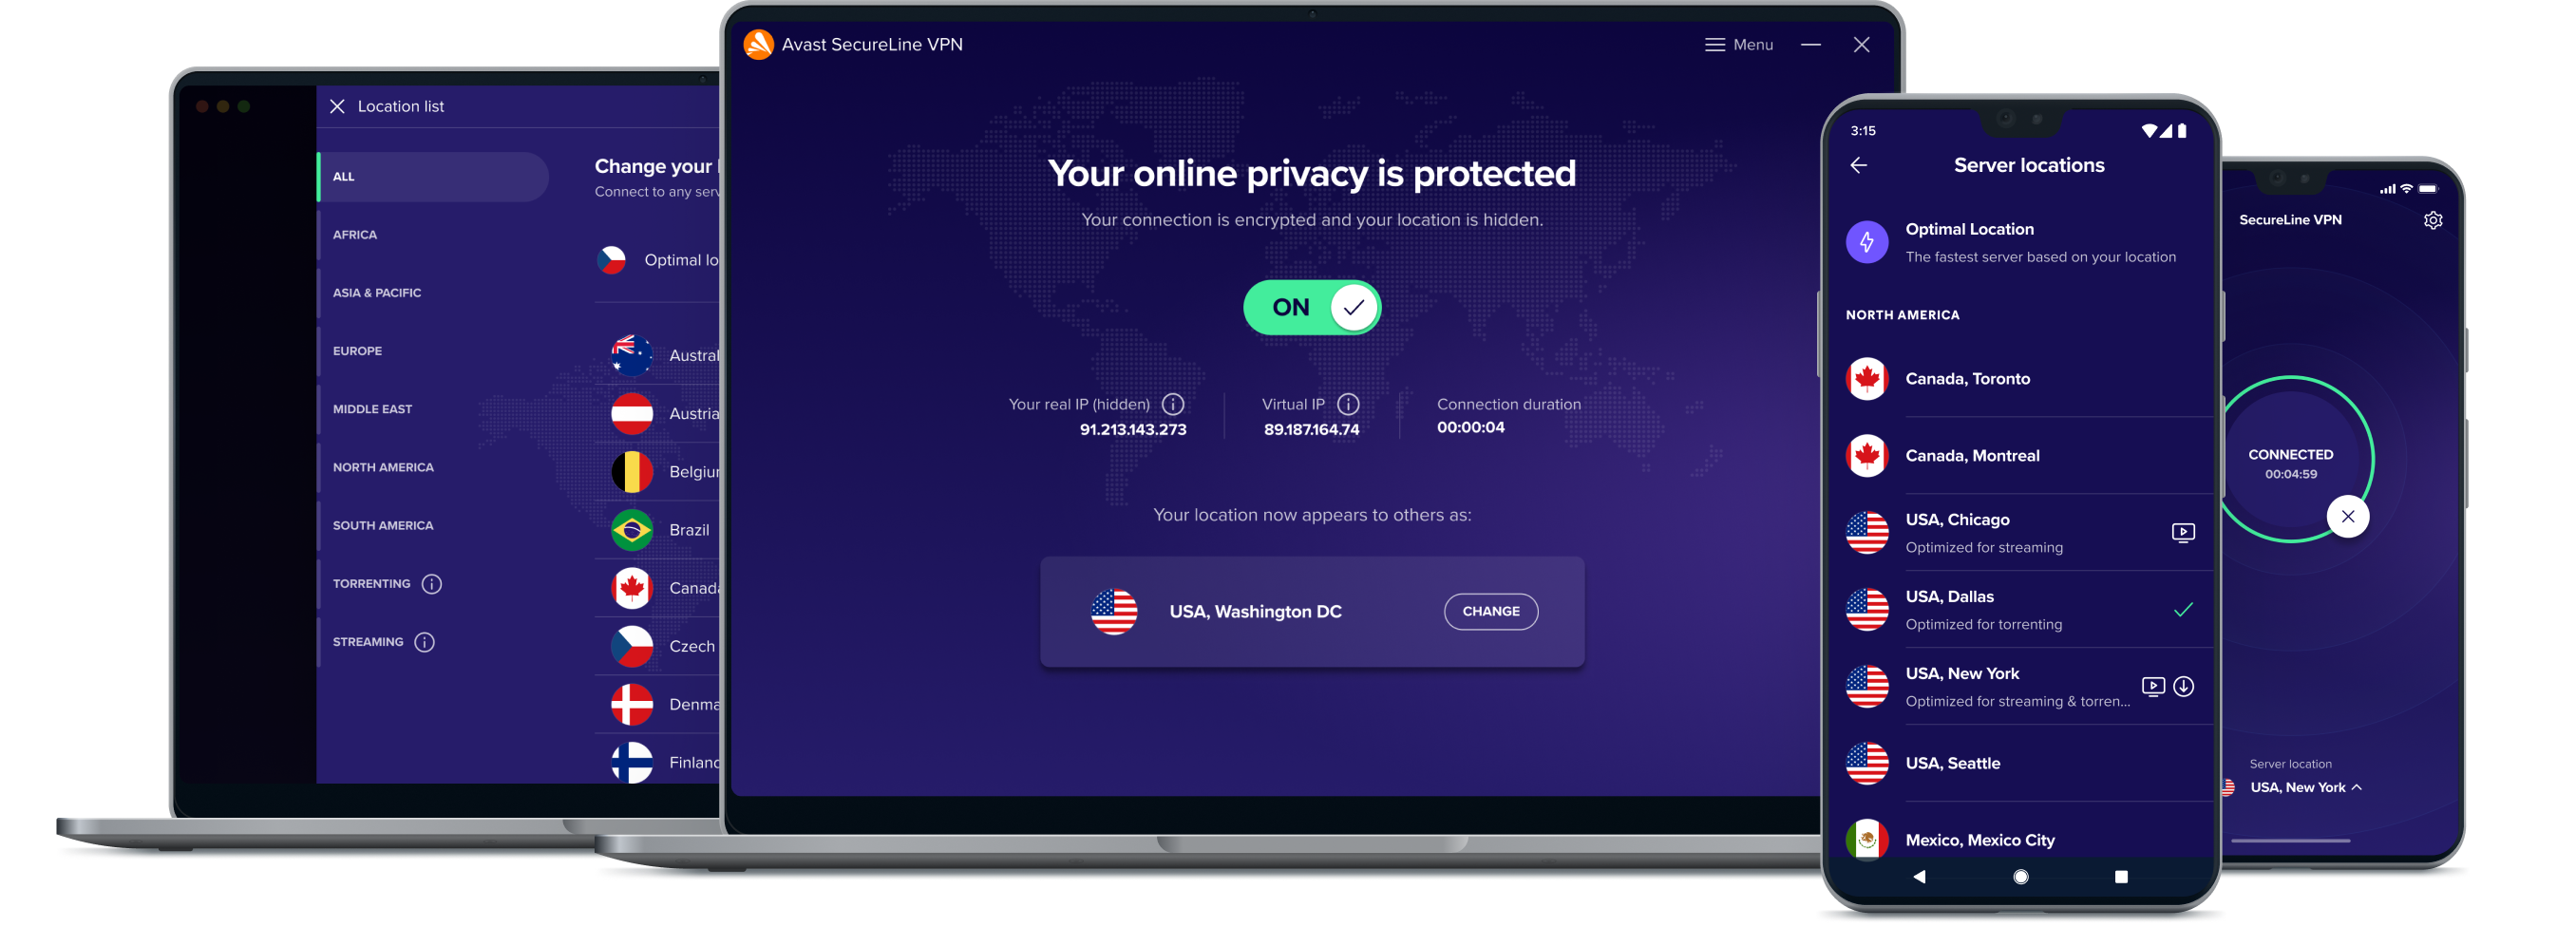 ปลดล็อกอิสรภาพออนไลน์ที่มากขึ้นด้วยบริการ VPN ของเรา